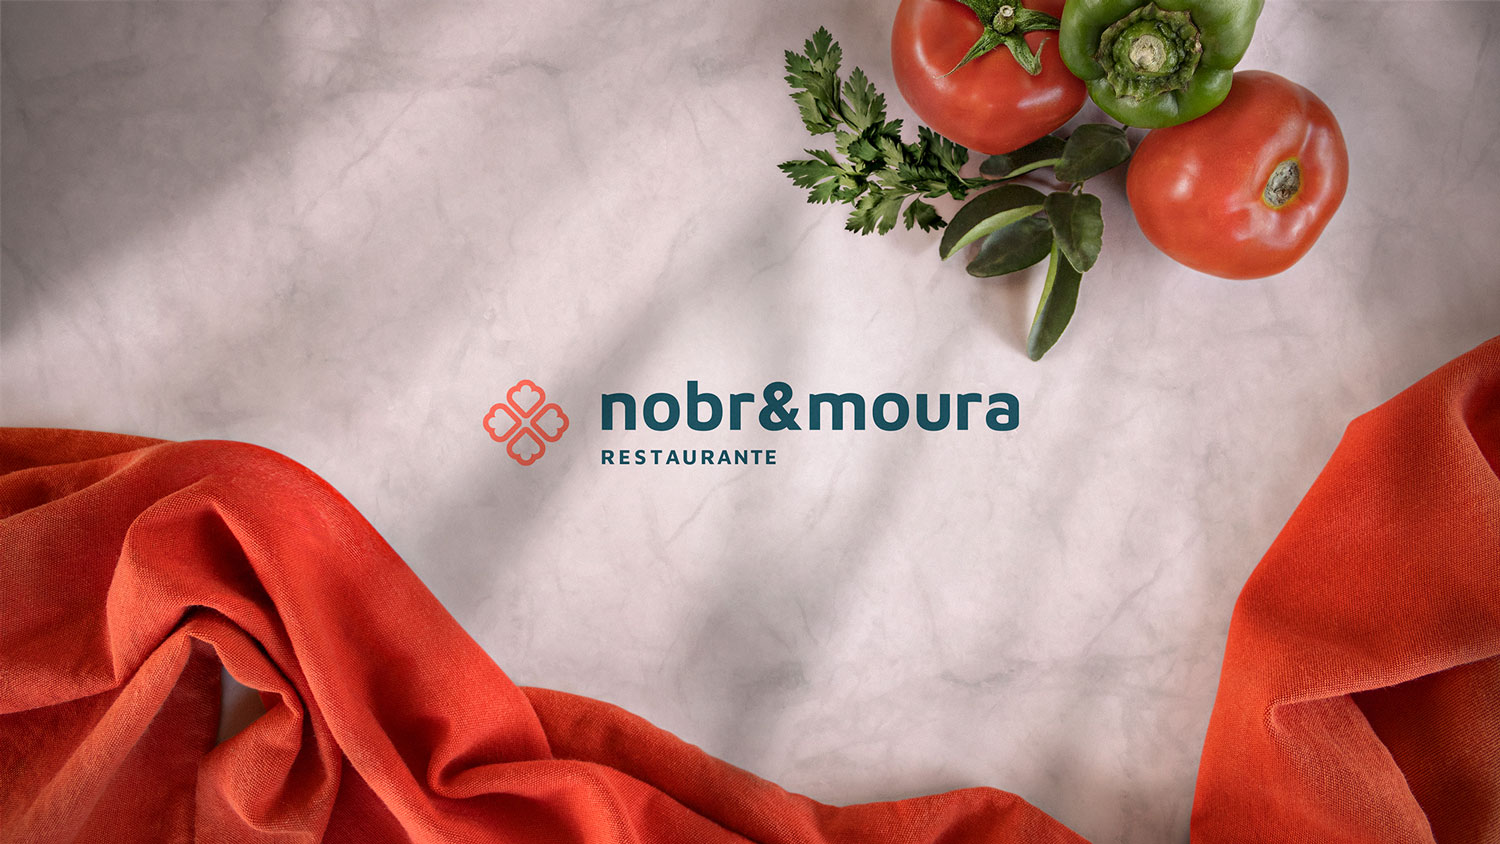 Brand Design for nobr&moura Restaurant